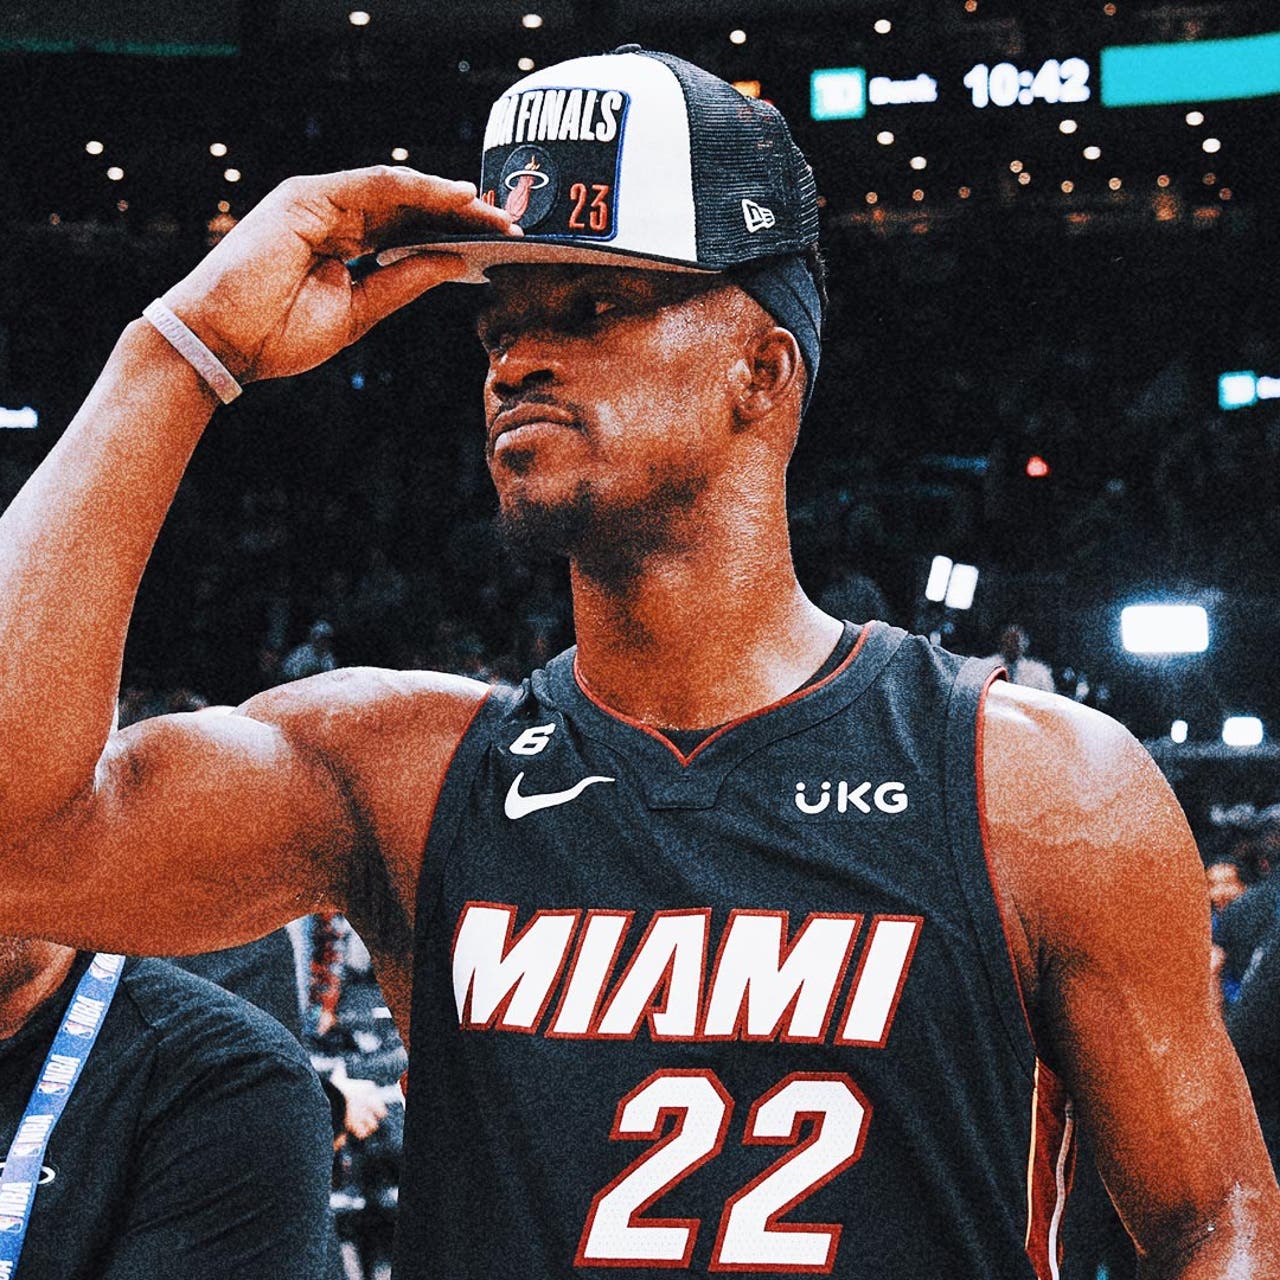 Miami Heat NBA Finals gear: Miami Heat jerseys, tshirts, hats